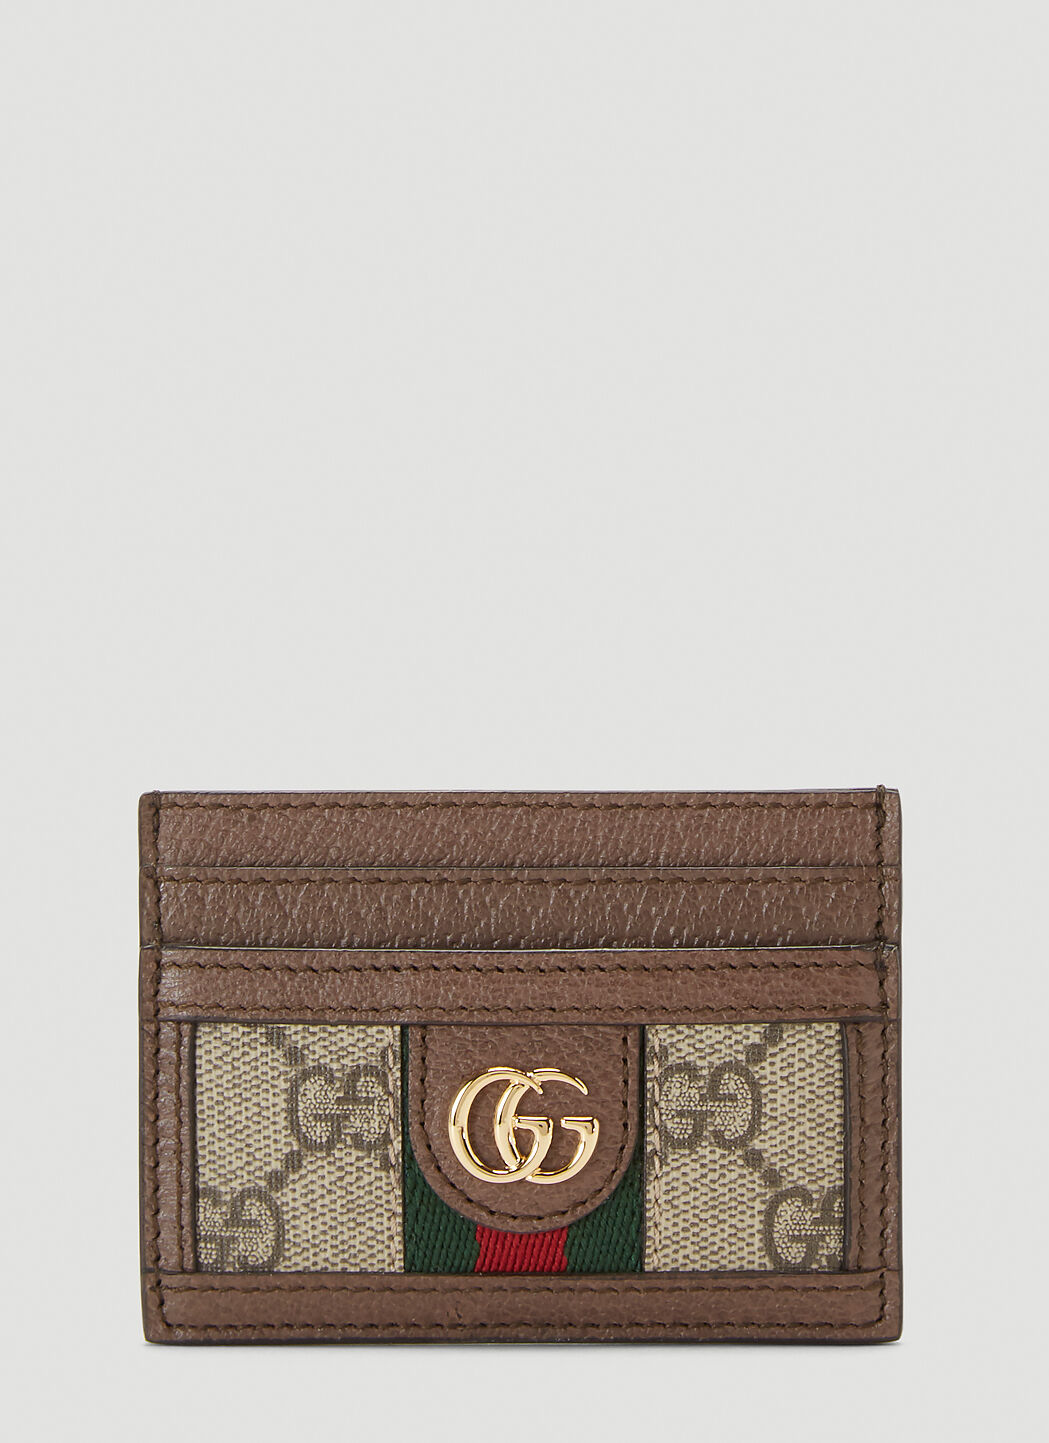 Gucci [オフィディア] カードホルダー ベージュ guc0345002